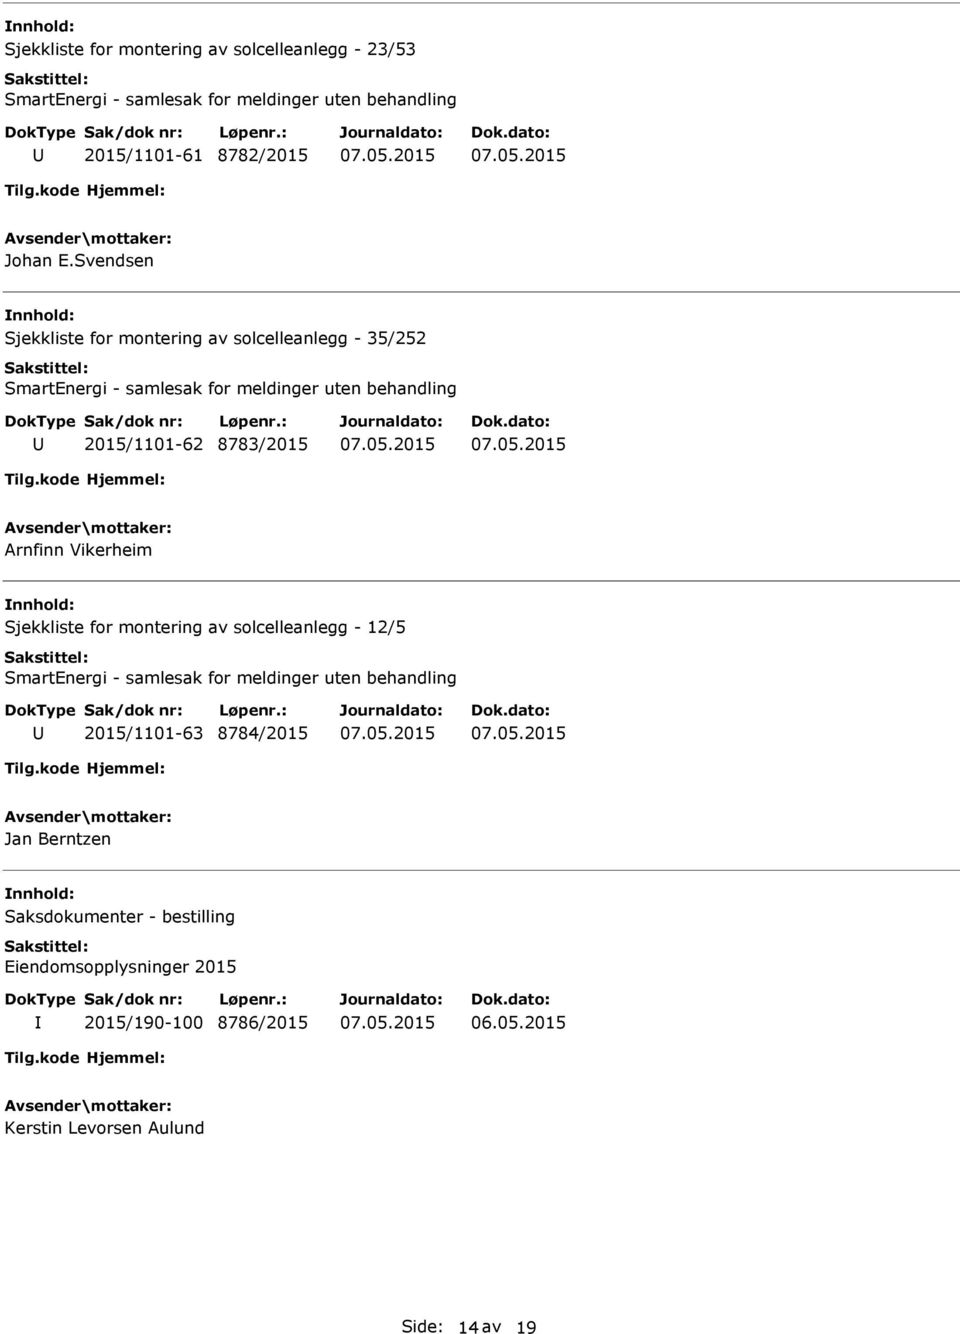 Vikerheim Sjekkliste for montering av solcelleanlegg - 12/5 2015/1101-63 8784/2015 Jan Berntzen